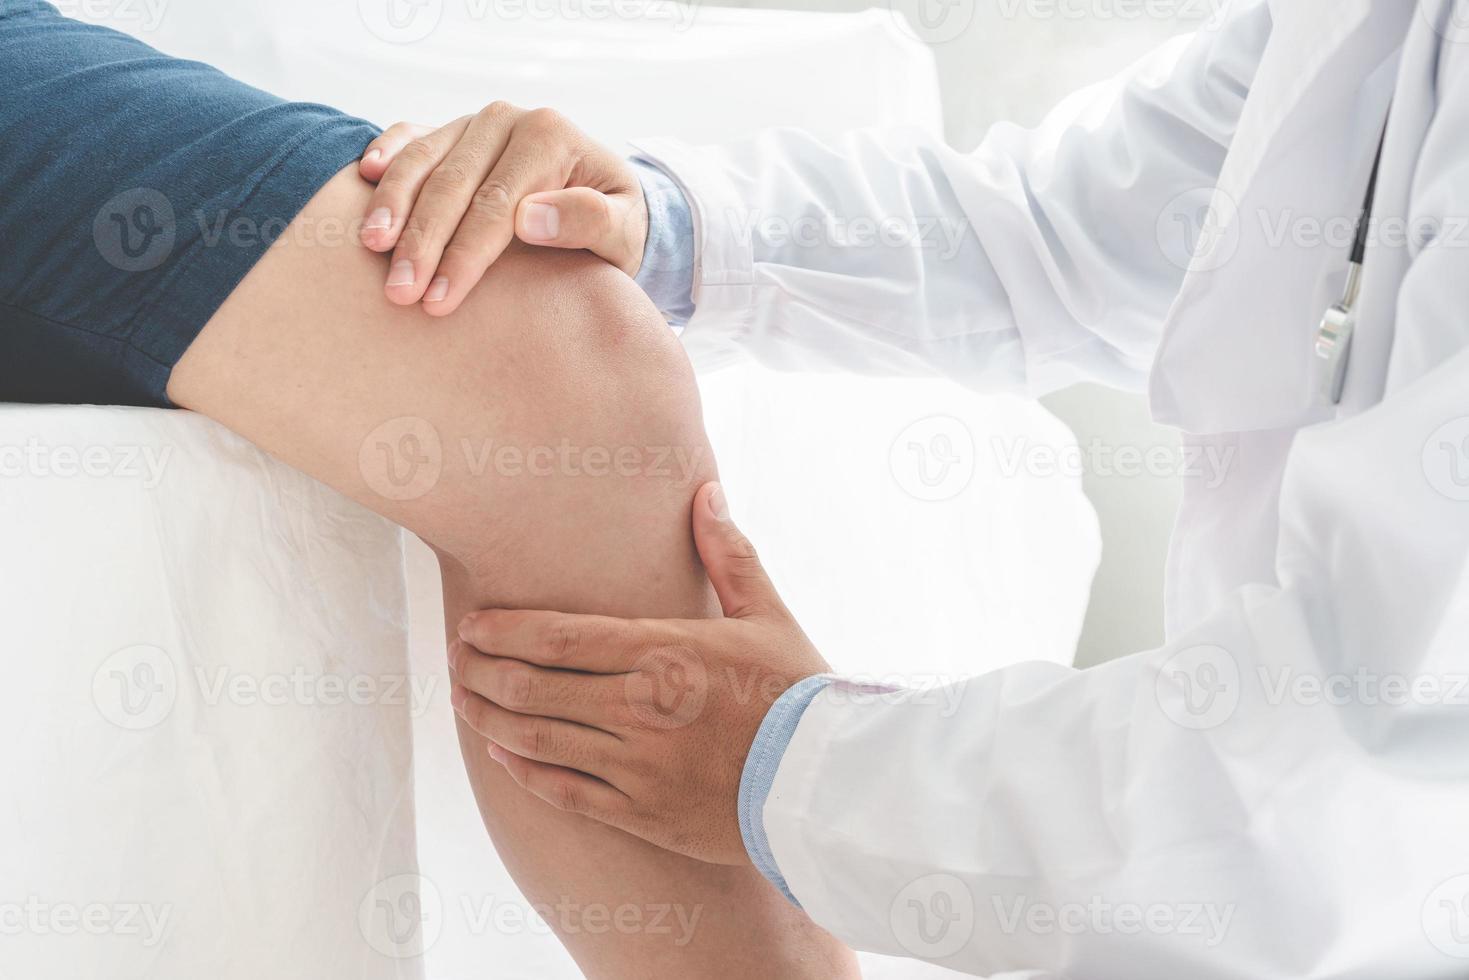 physiothérapeute faisant un traitement de guérison sur la bannière panoramique du concept de thérapie physique sport jambe patient photo